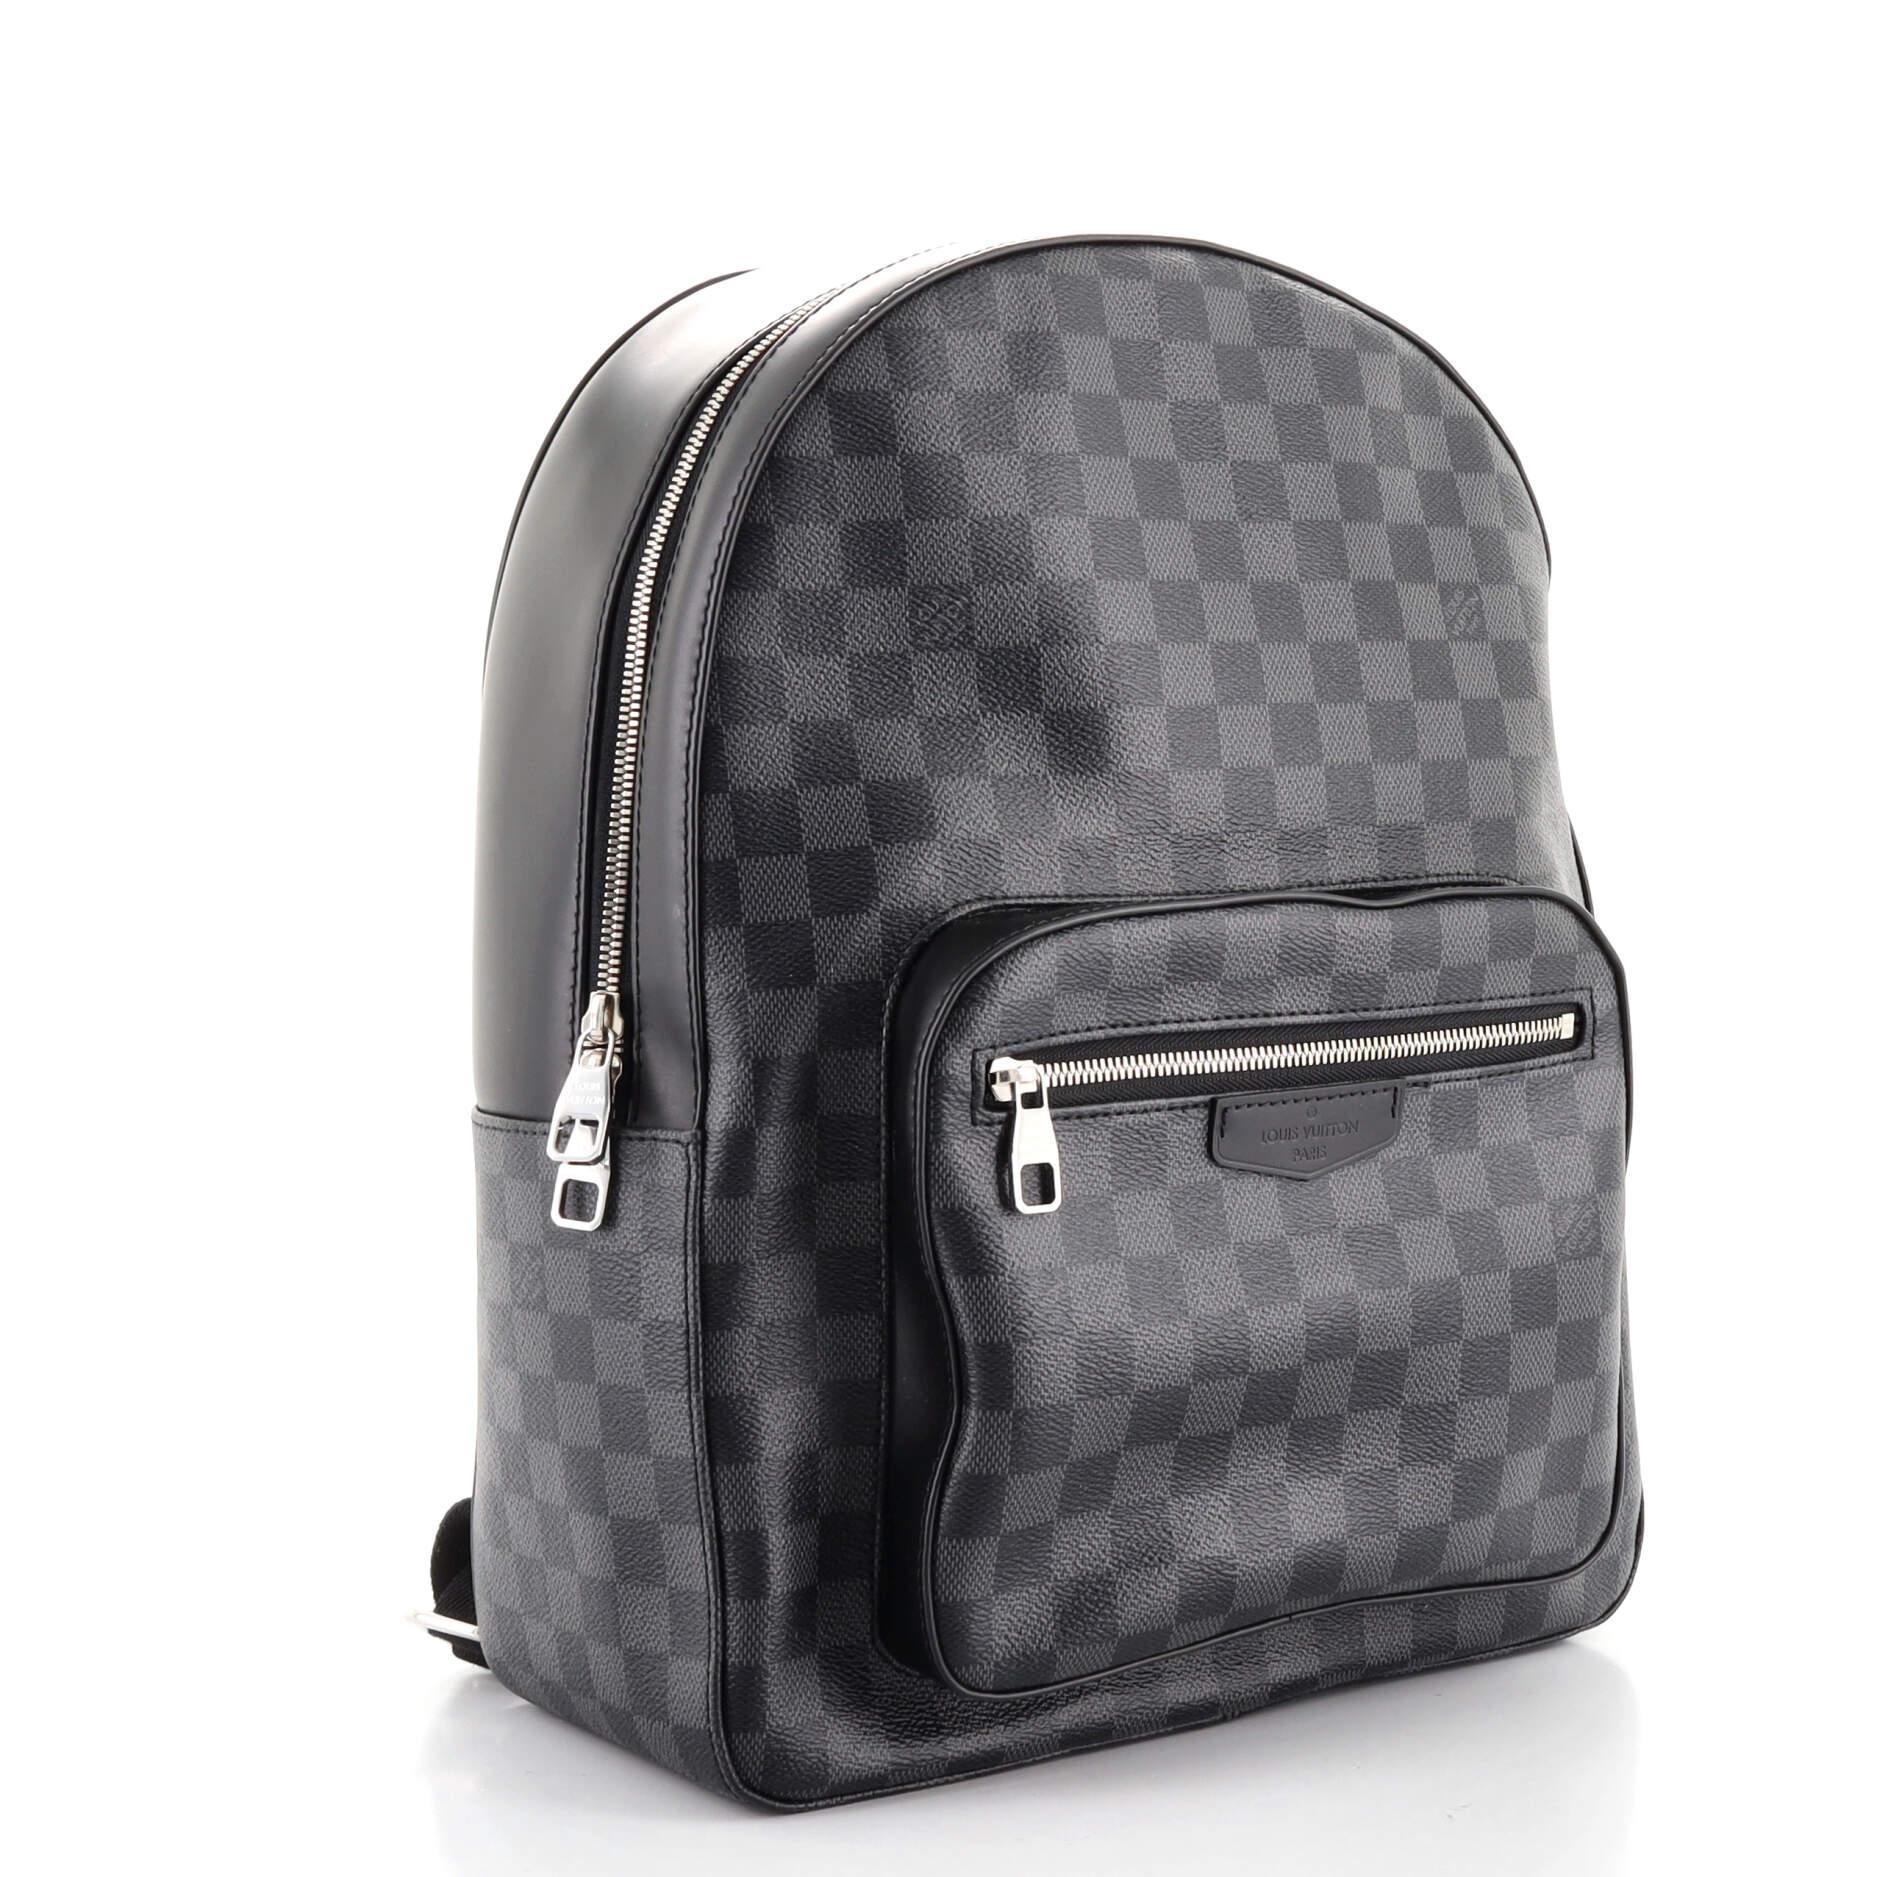 Louis Vuitton Josh Backpack Limited Edition Renaissance Map Damier